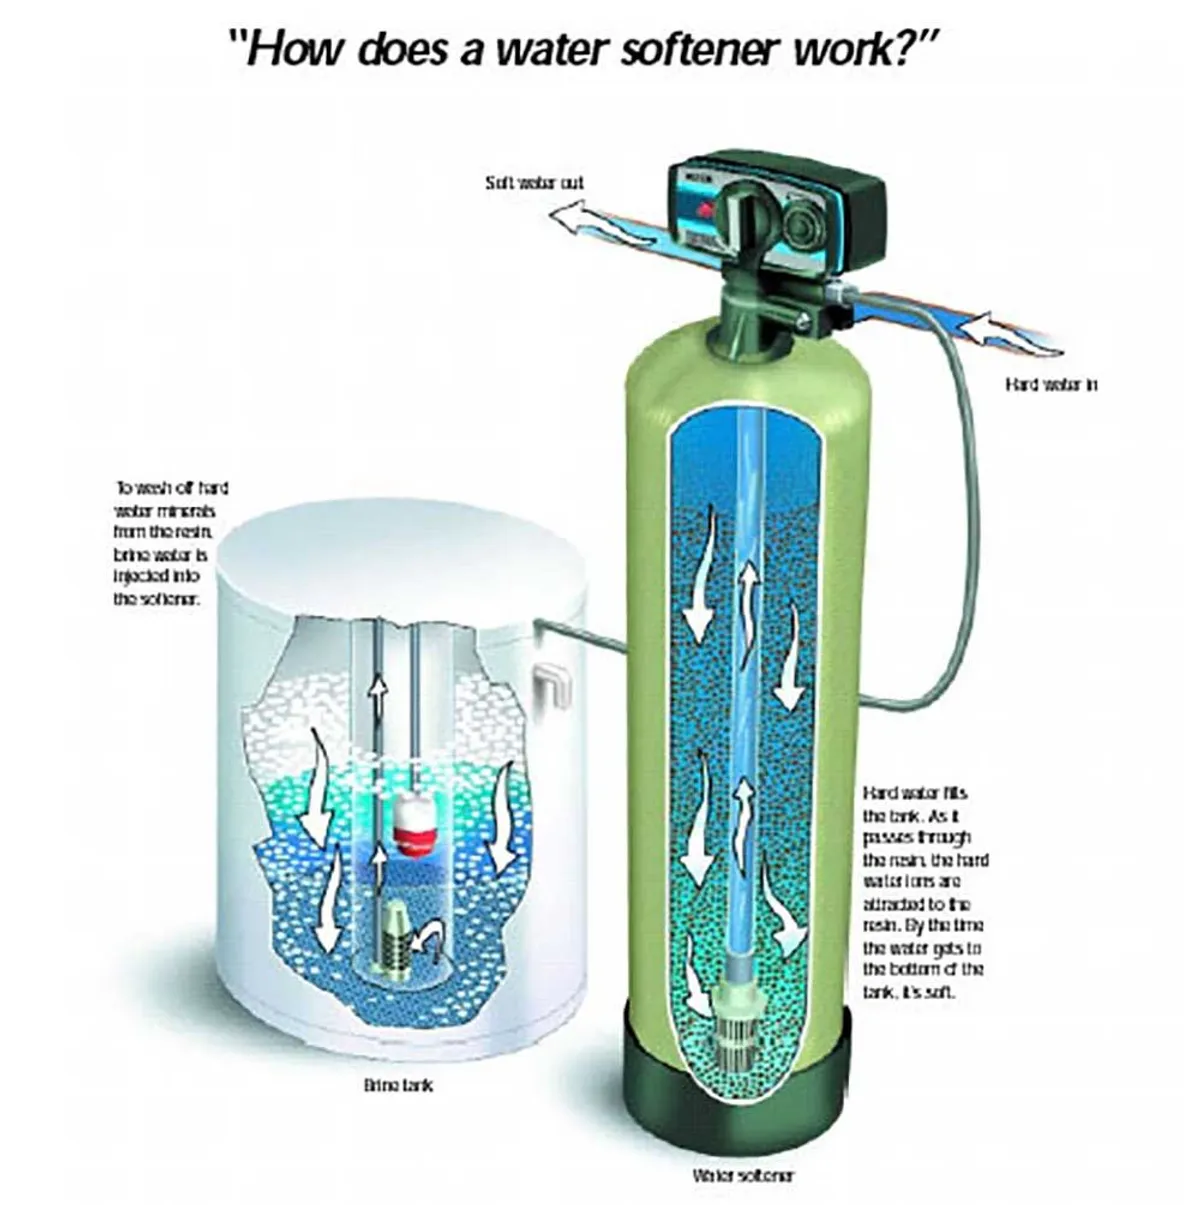 The Salt-Based Water Softener